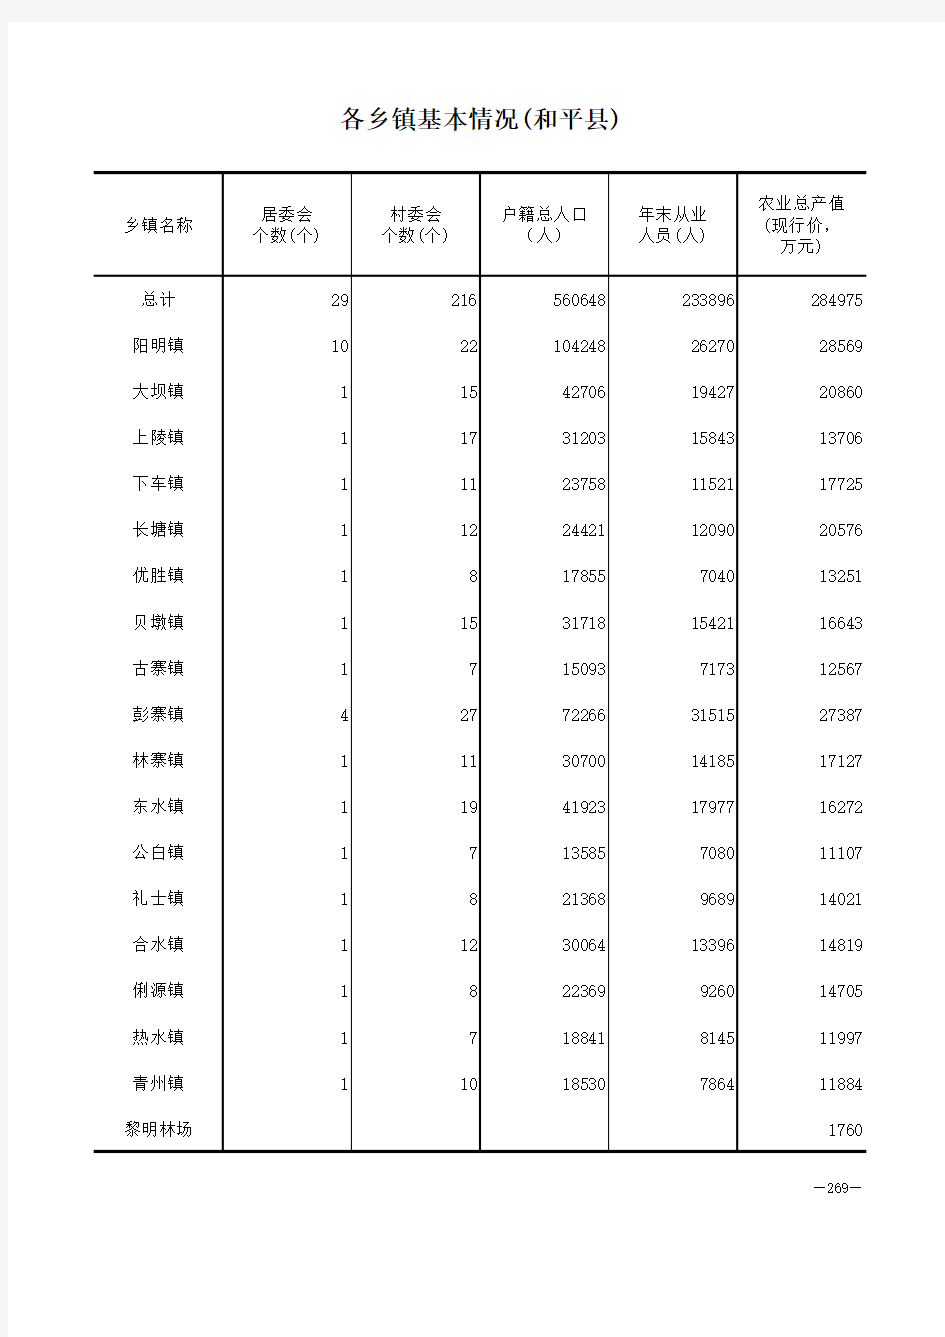 河源市社会经济发展统计数据：1-各乡镇基本情况村居委会个数户籍人口农业总产值(2018)和平县